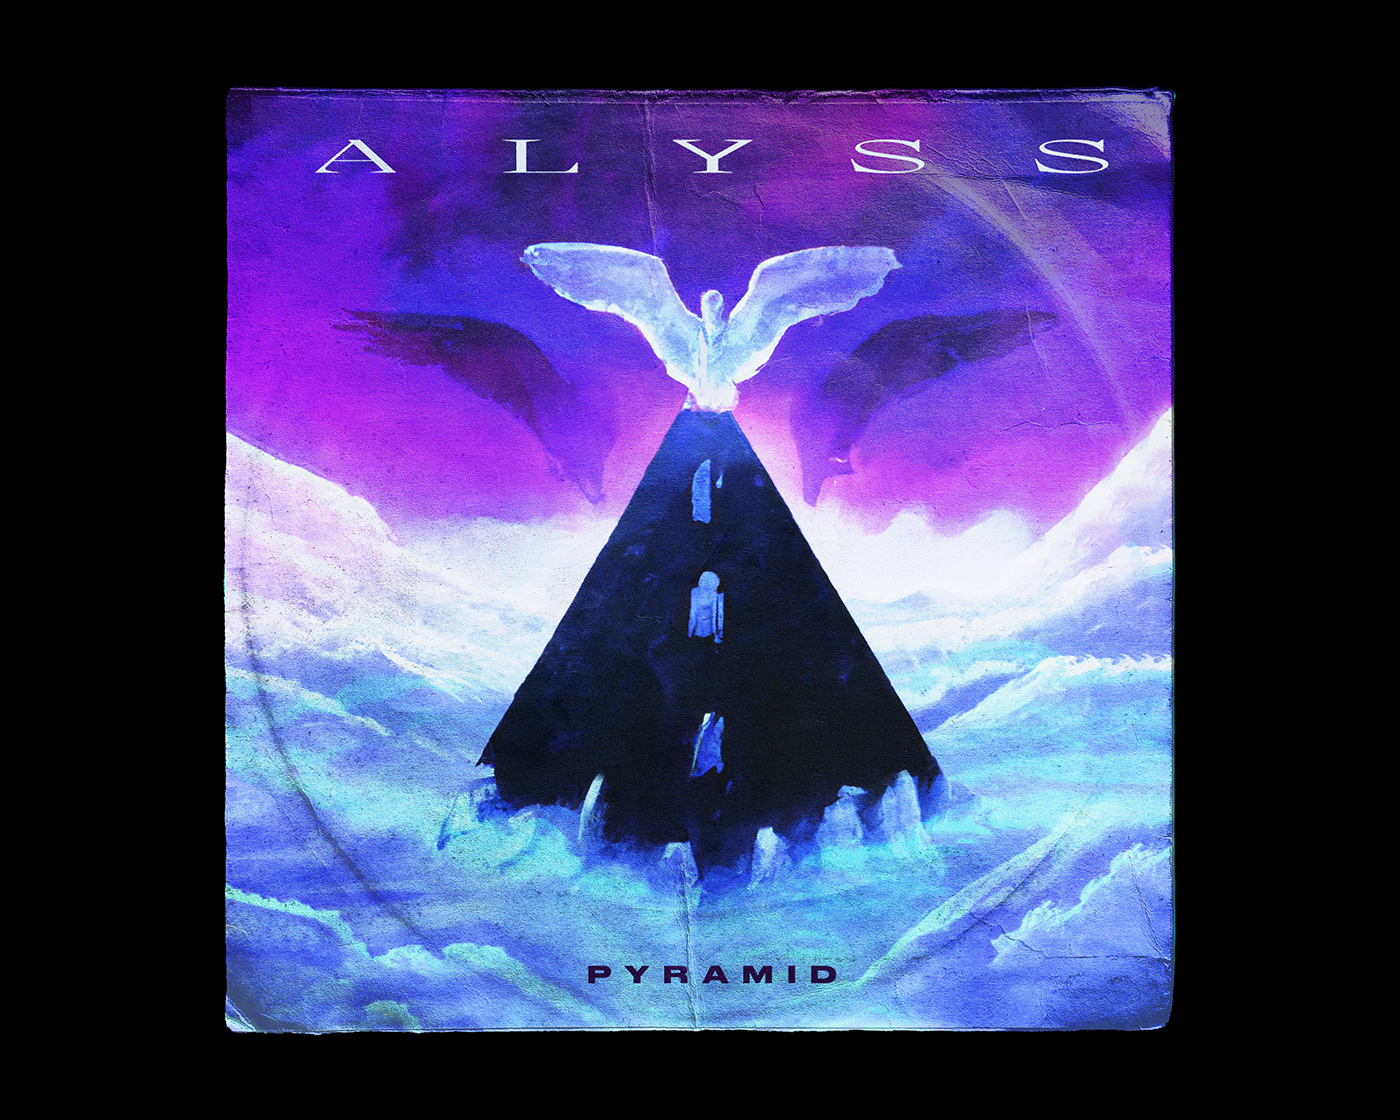 ALYSS - “Pyramid” - Record Sleeve